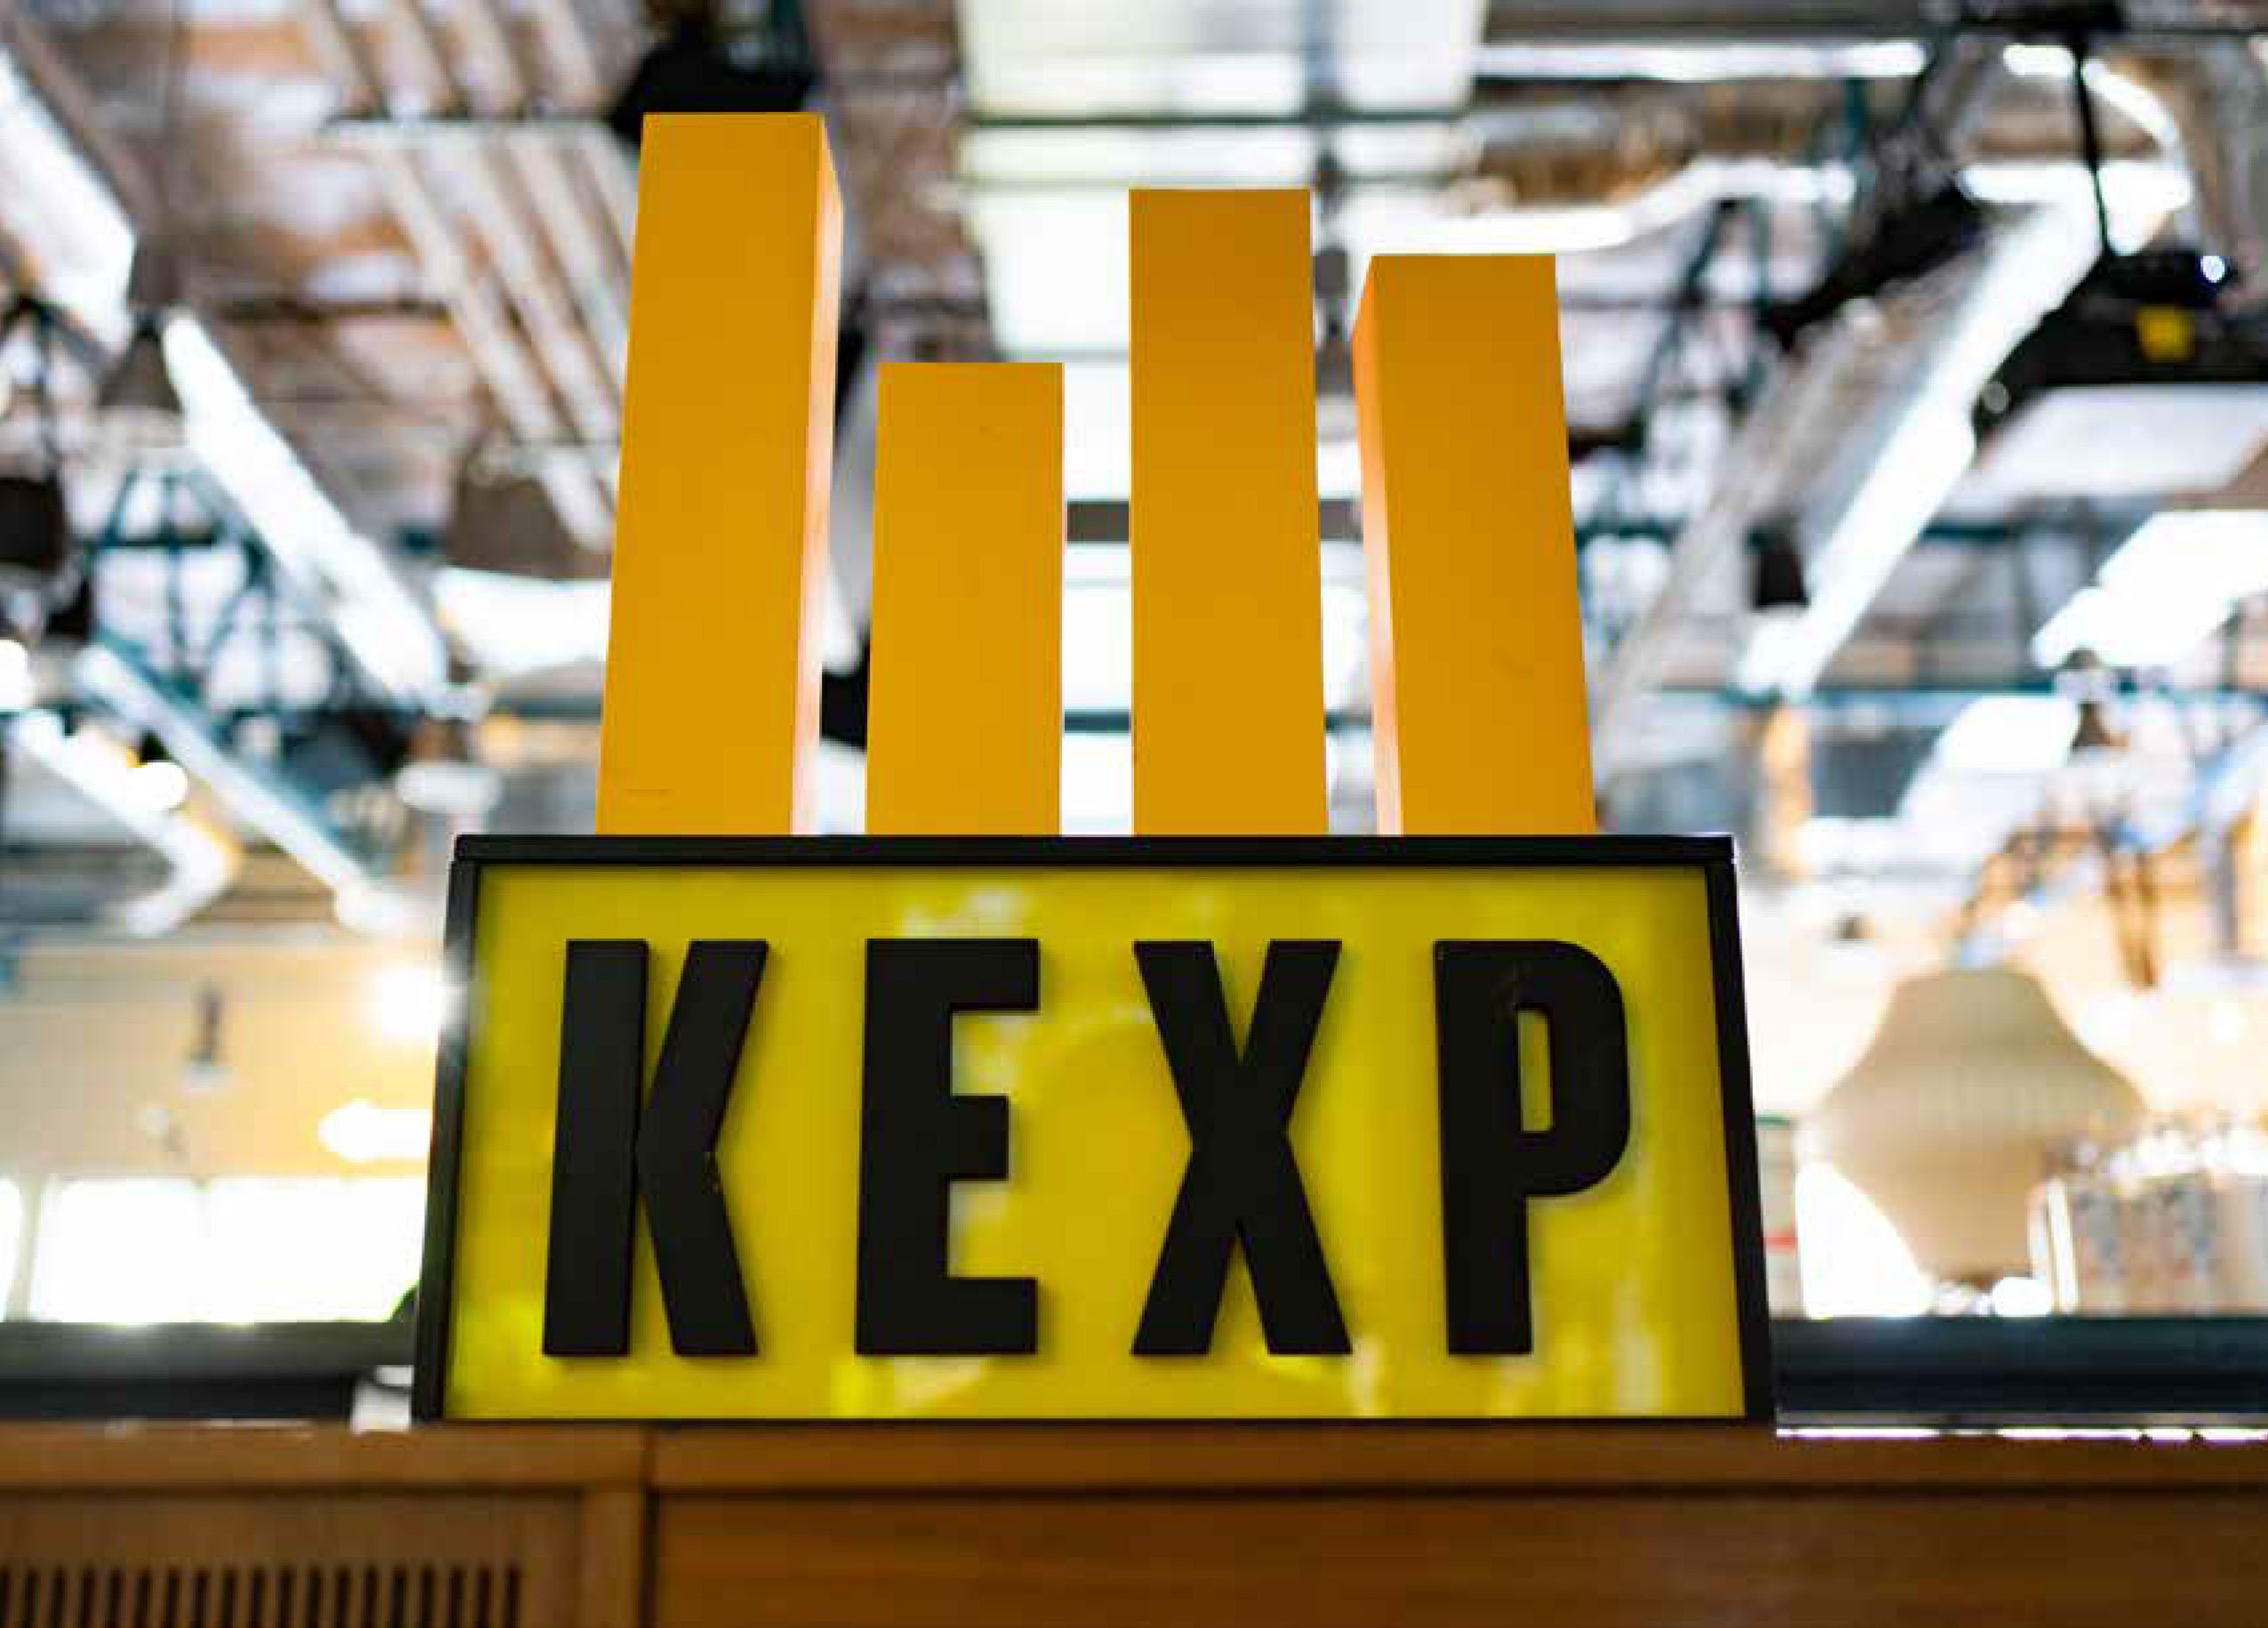 2021-Annual-Report-KEXP-Sign.jpg